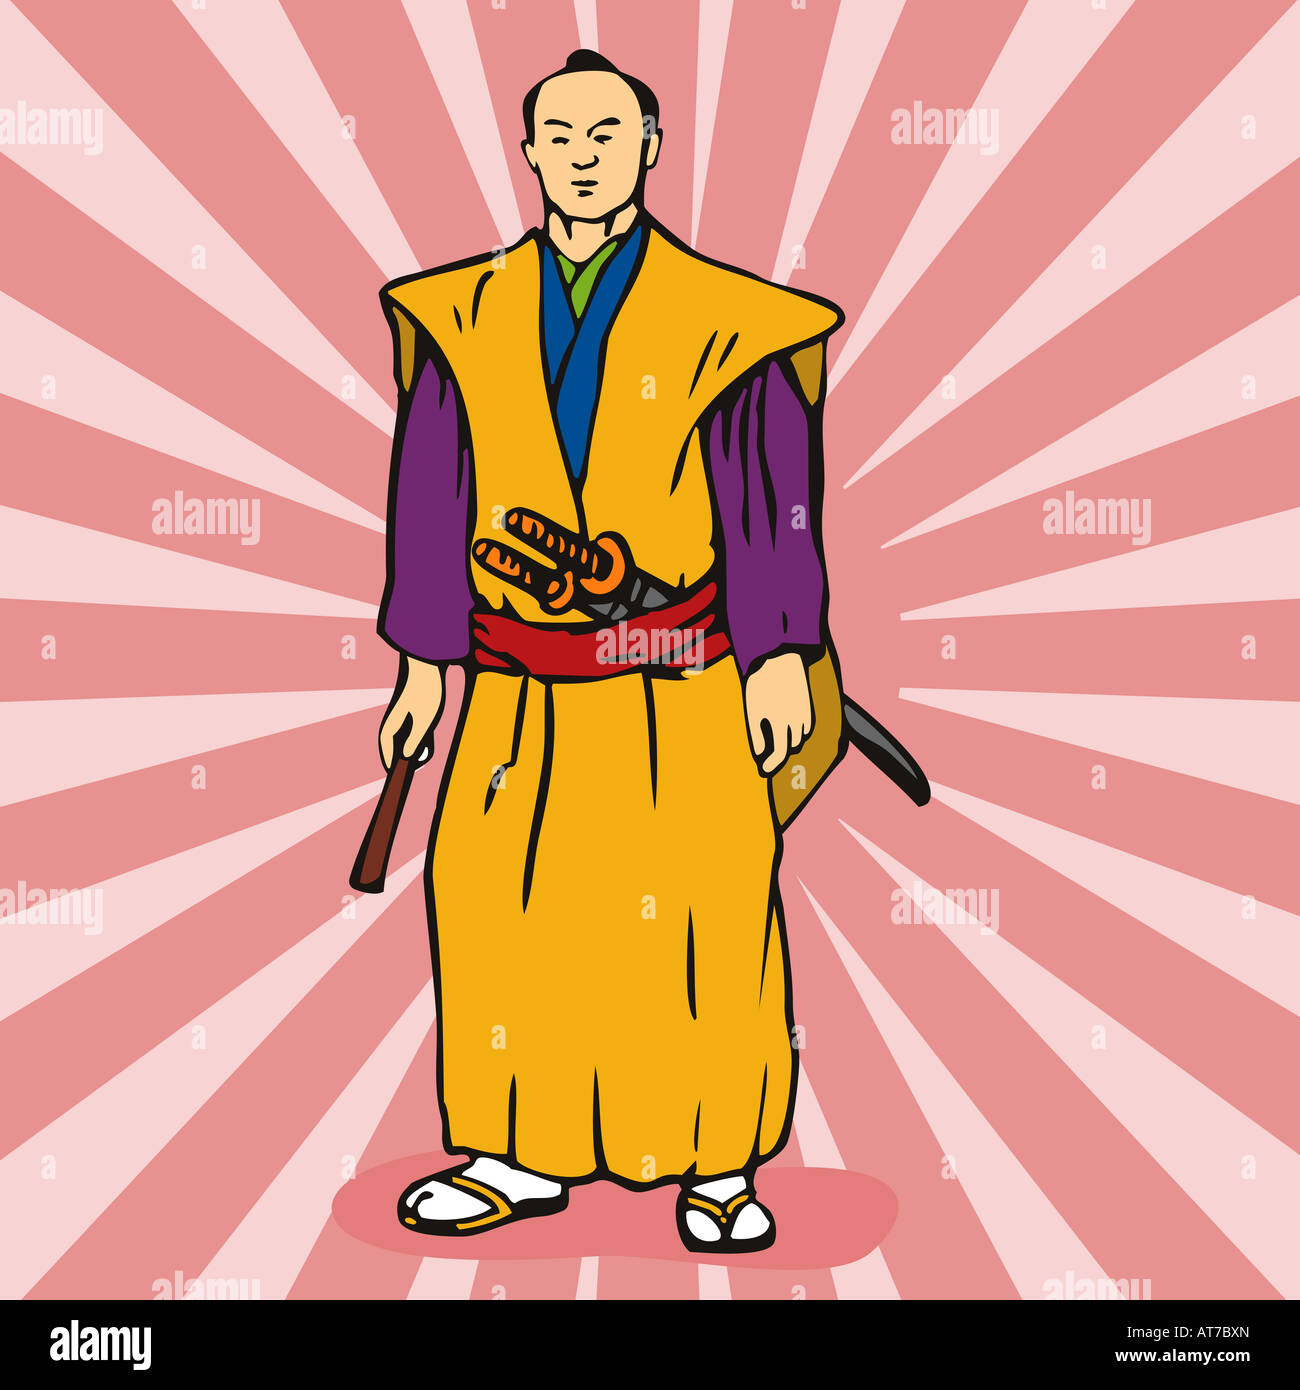 Japanese samurai warrior illustration Stock Photo